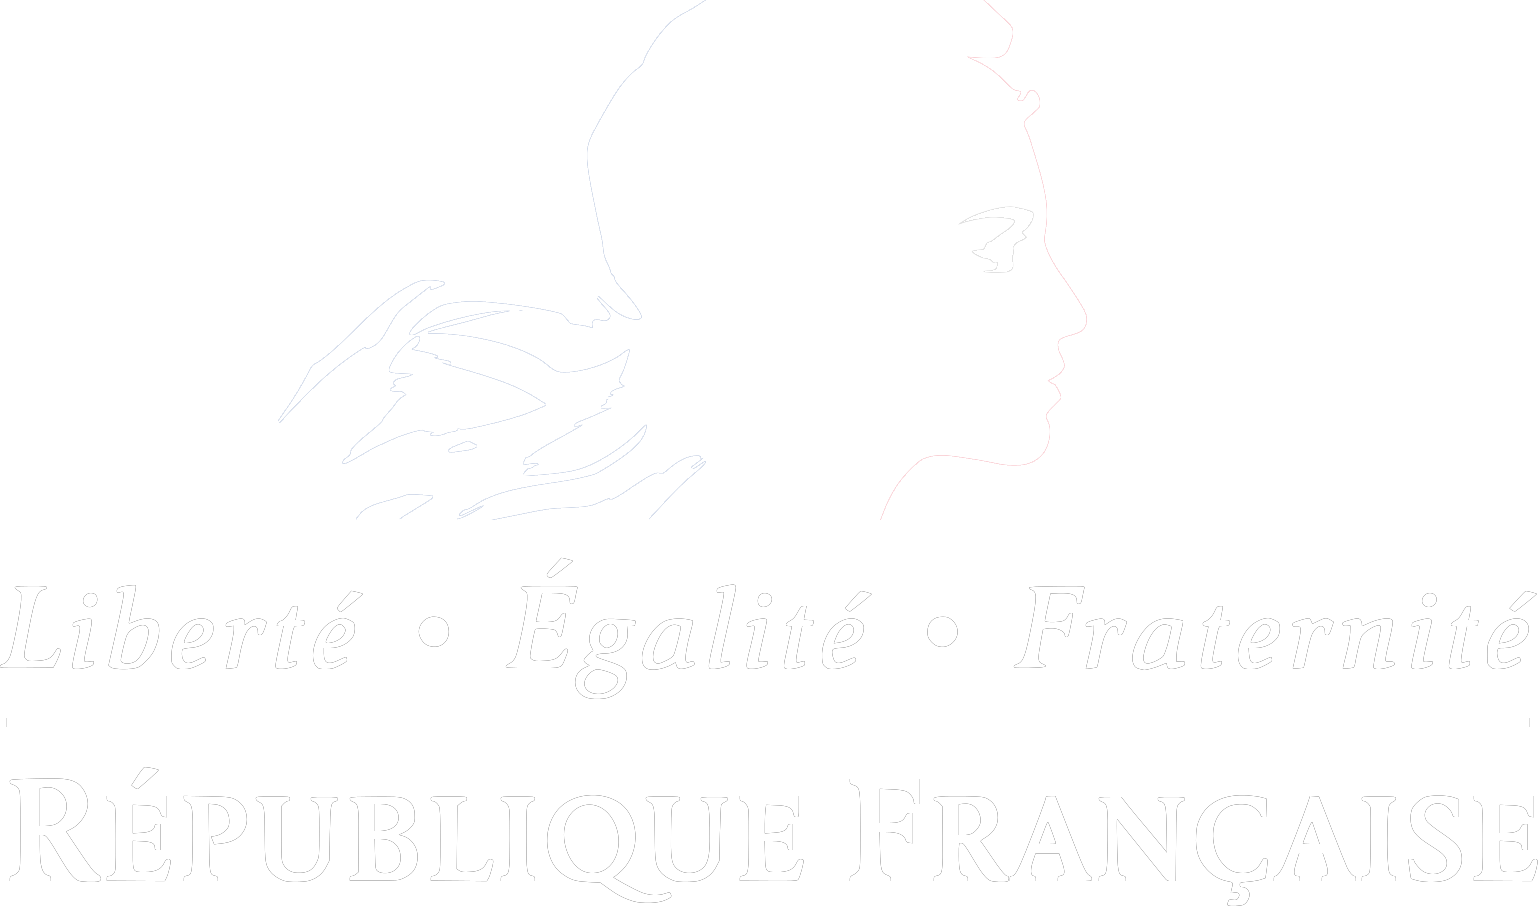 logo republique française